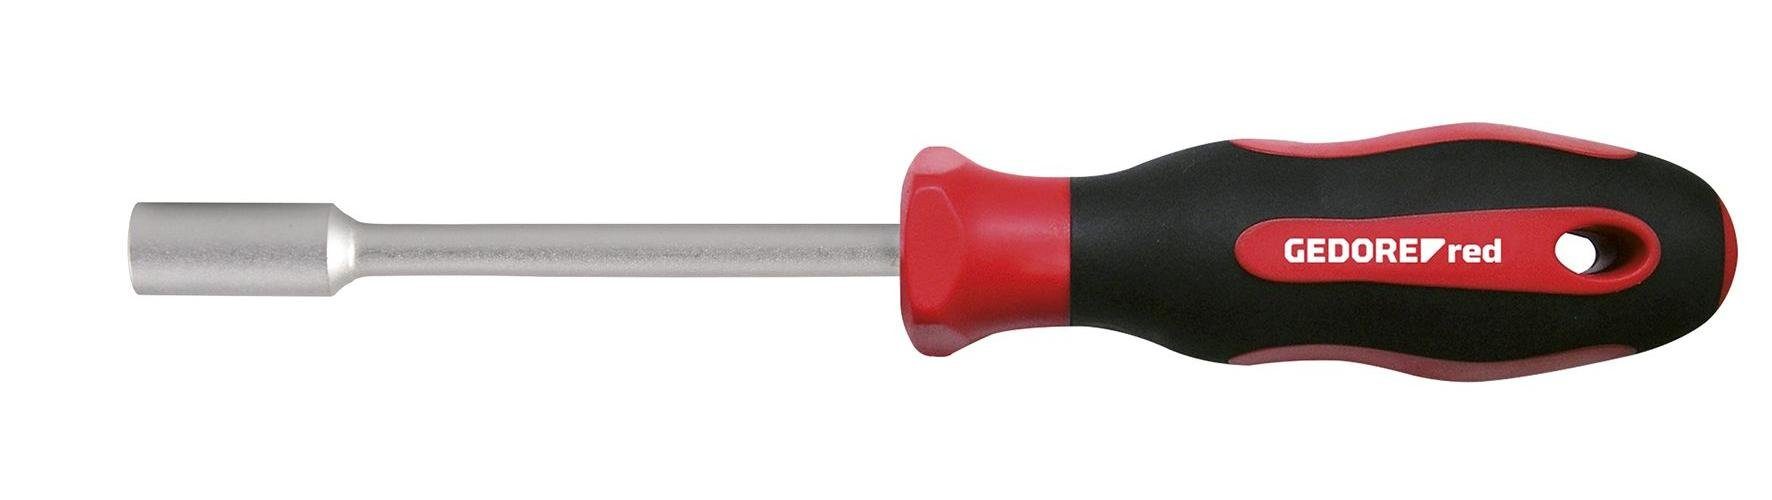 Gedore Red Steckschlüssel R38500517 2K-Schraubendreher 6-kant 5 mm Länge 90 mm | Steckschlüssel